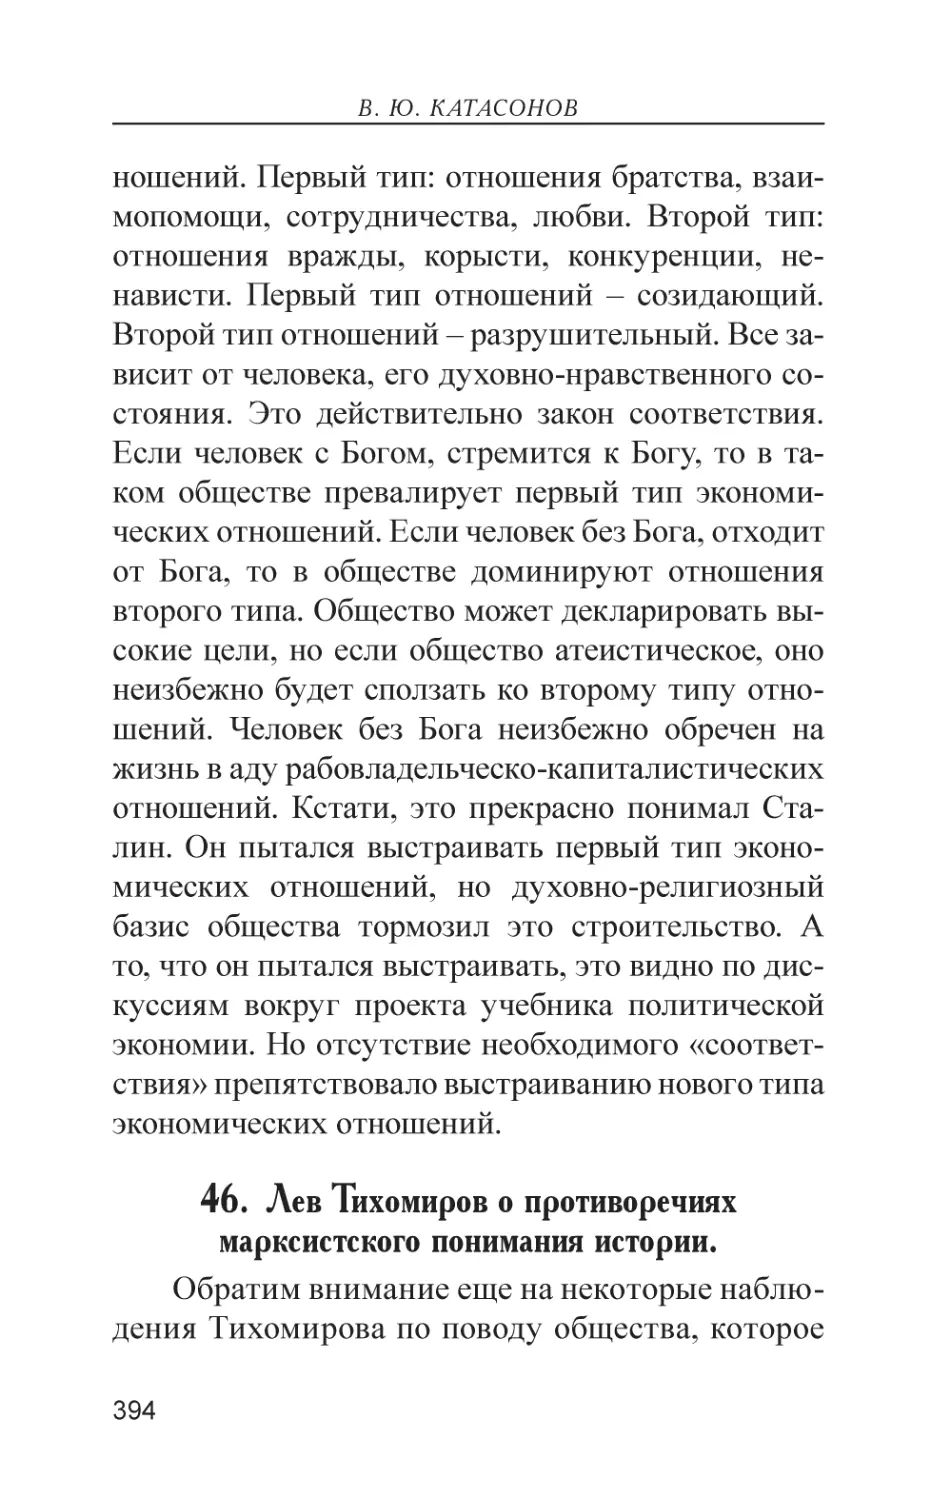 46. Лев Тихомиров о противоречиях марксистского понимания истории.